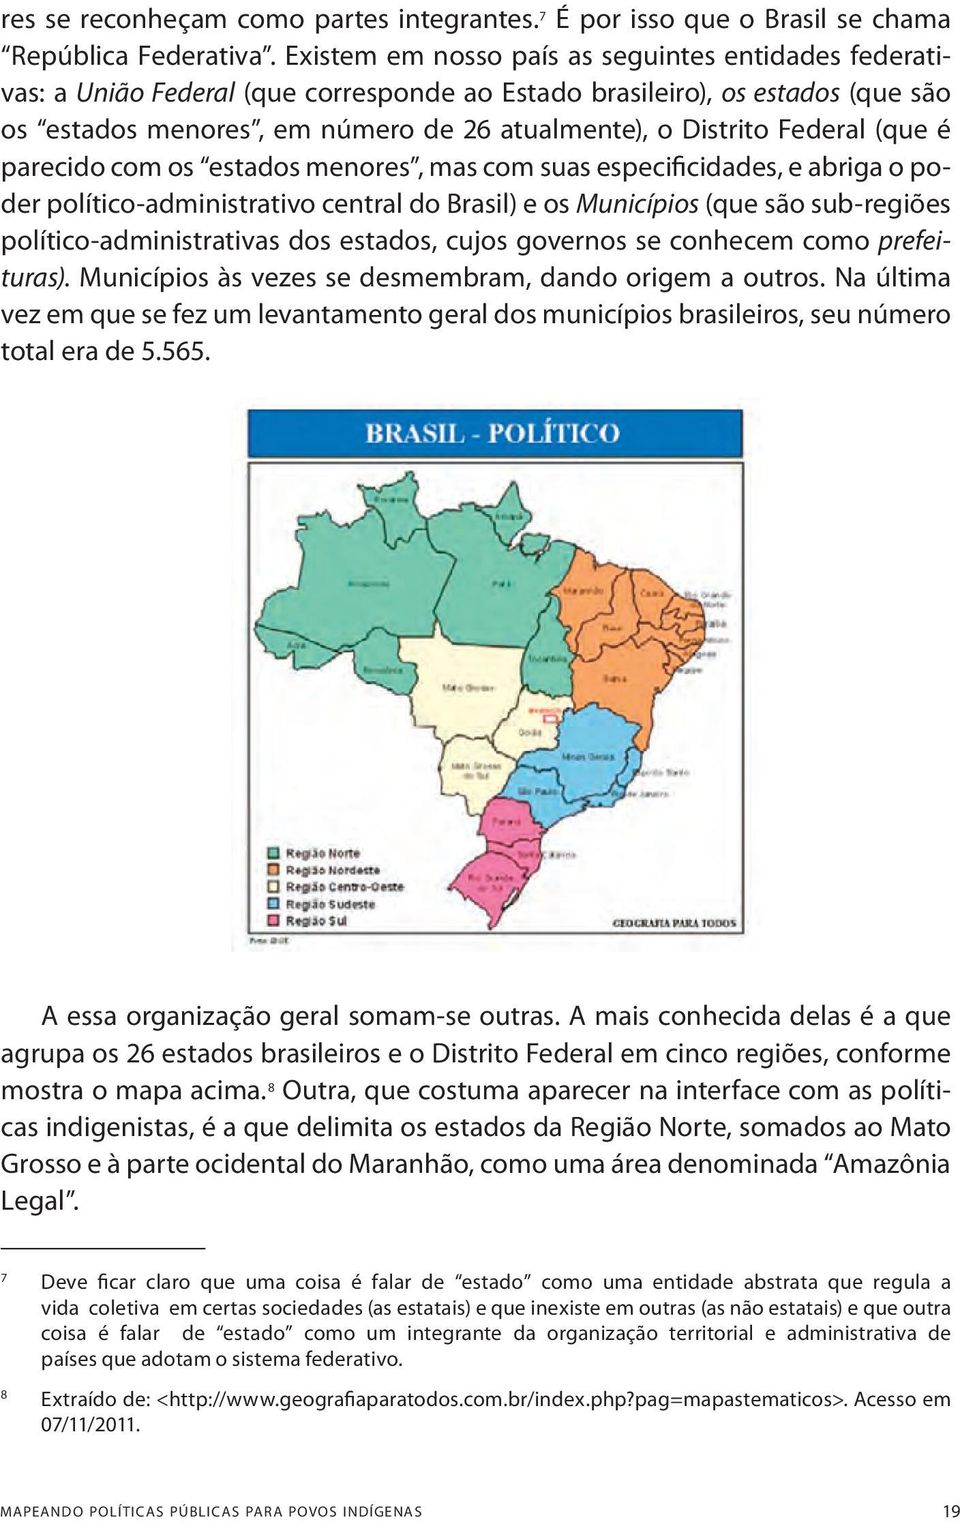 Federal (que é parecido com os estados menores, mas com suas especificidades, e abriga o poder político-administrativo central do Brasil) e os Municípios (que são sub-regiões político-administrativas